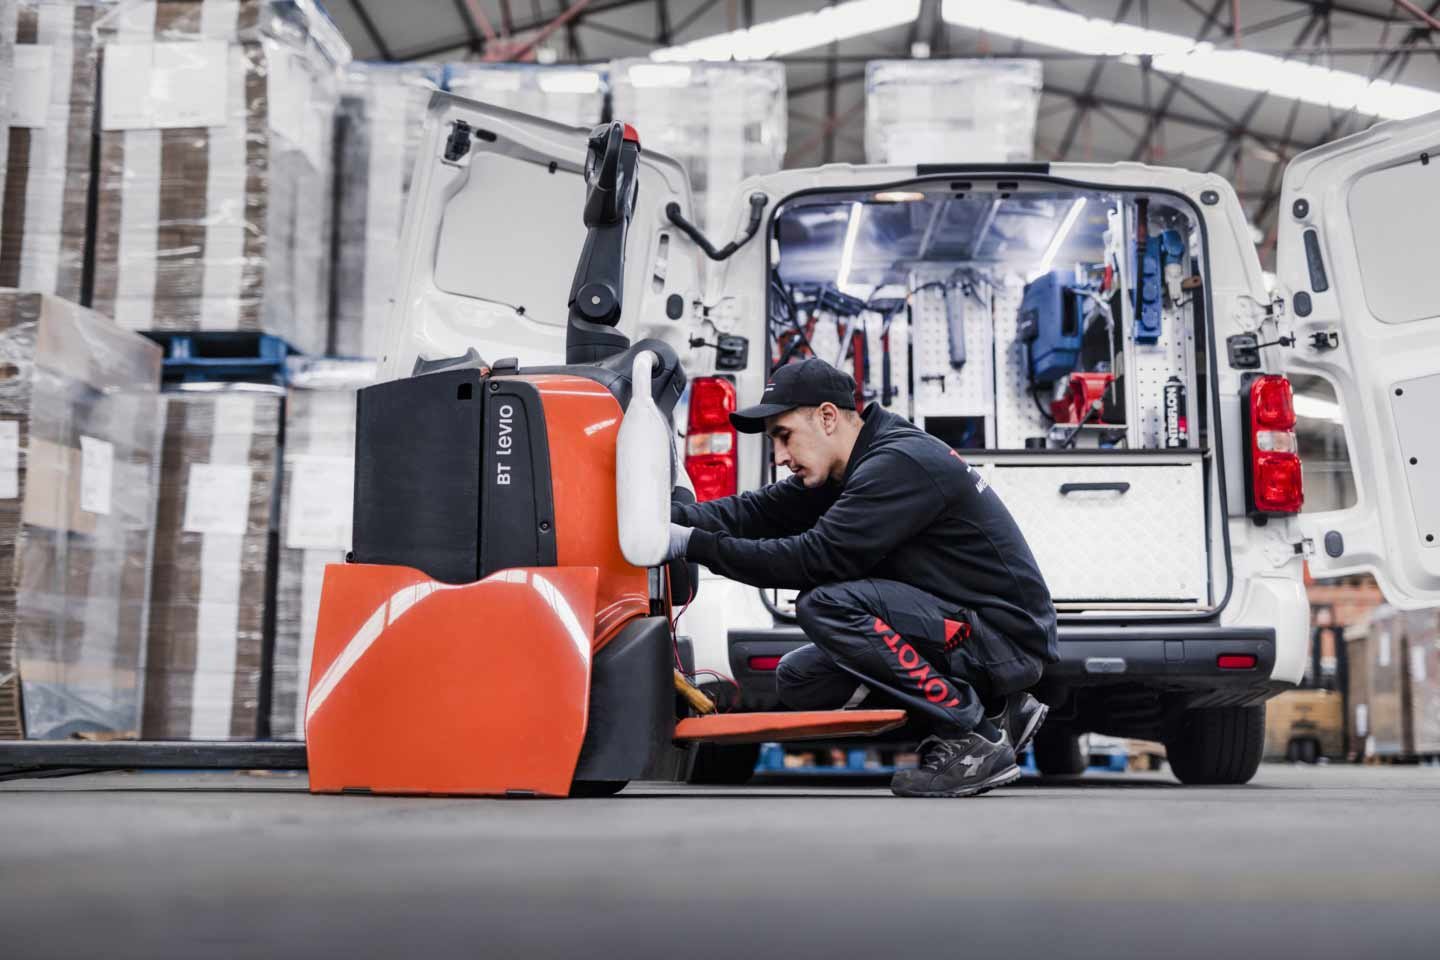 Servicio técnico comprobando el funcionamiento de una carretilla Toyota| 8 Consejos para el correcto mantenimiento de carretillas elevadoras | Toyota Material Handling